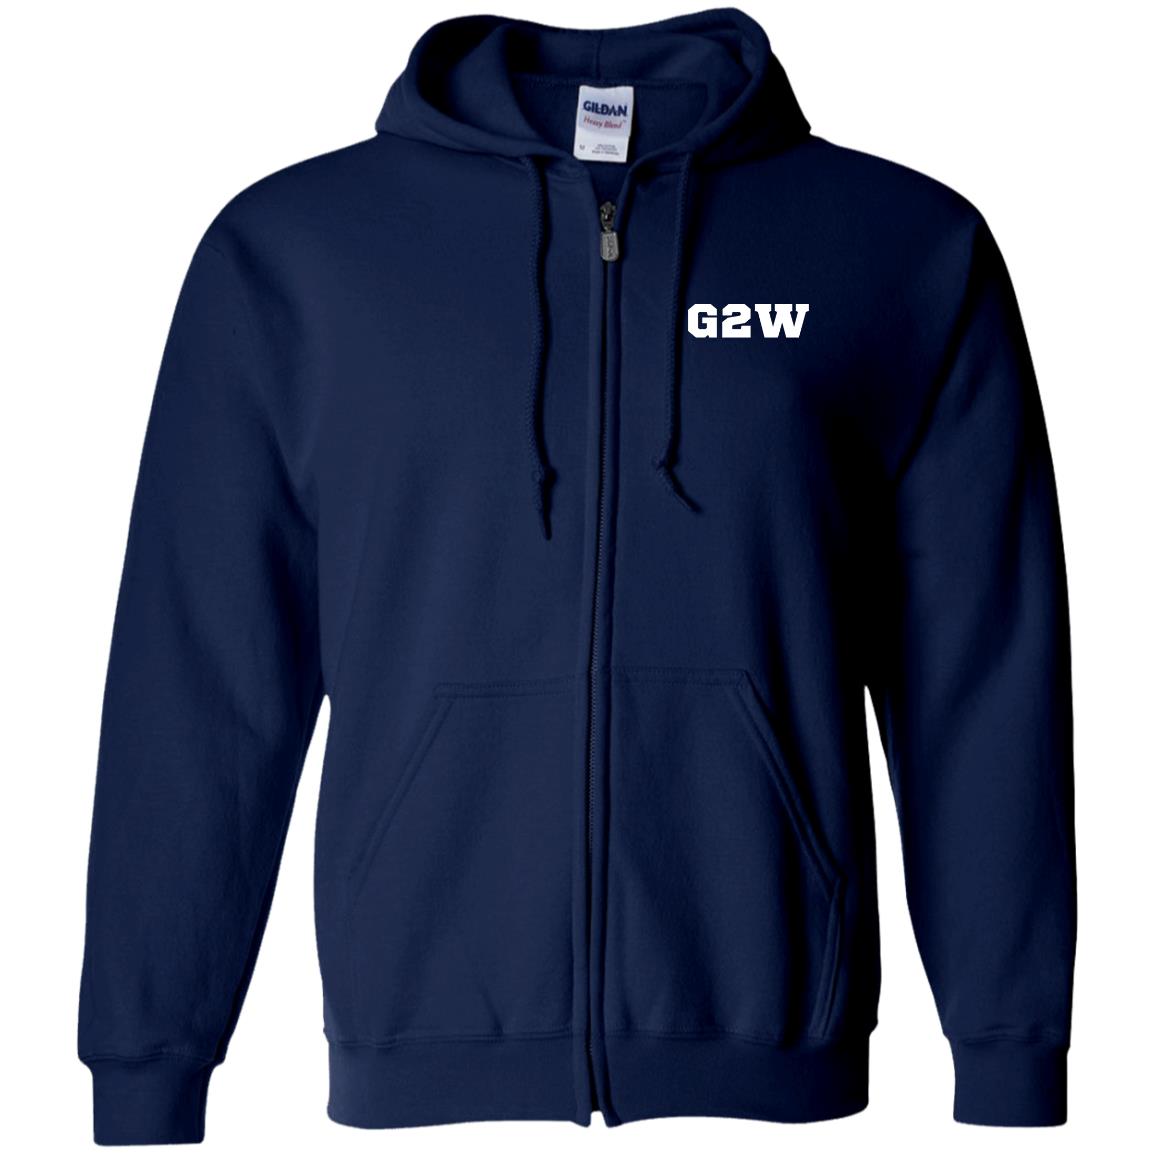 G2W Zip Up Hooded Sweatshirt